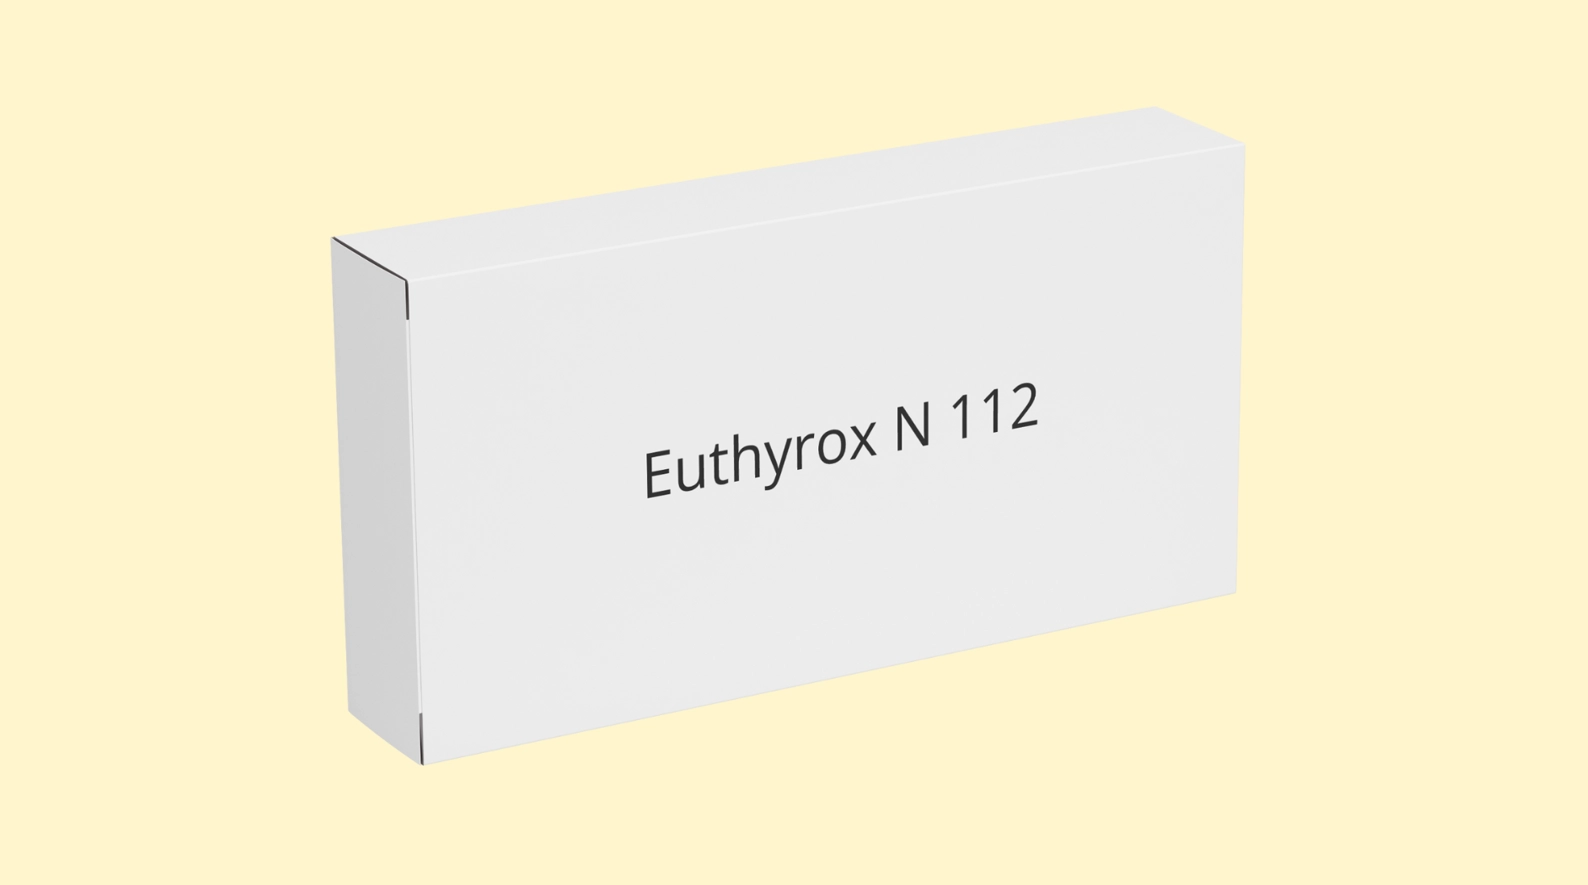 Euthyrox N 112 mcg E   recepta   recepta online z konsultacją | cena  dawkowanie  przeciwwskazania